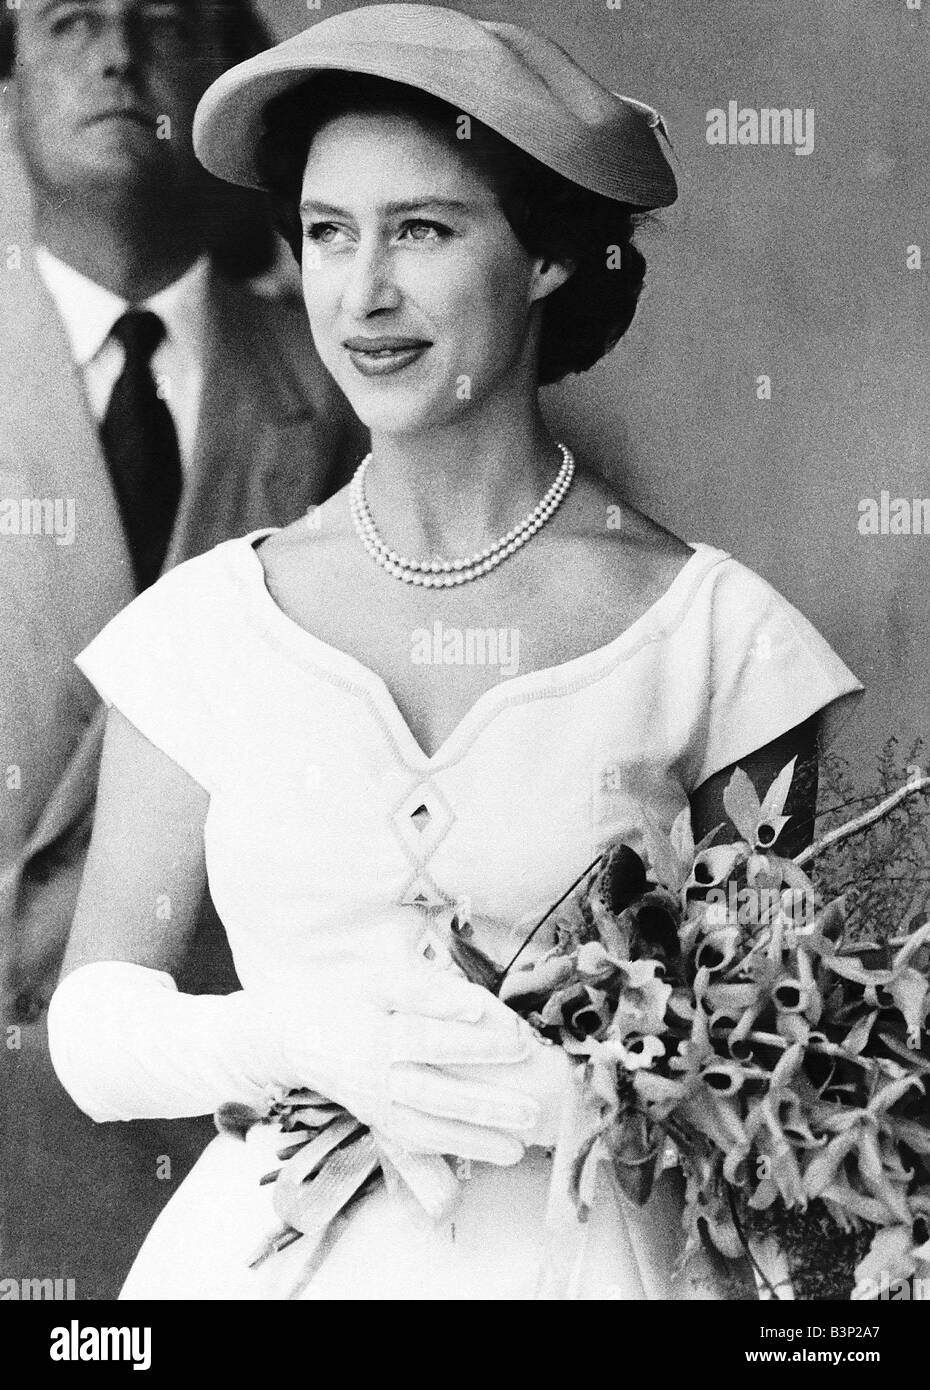 La princesse Margaret célèbre son anniversaire Date inconnue Banque D'Images